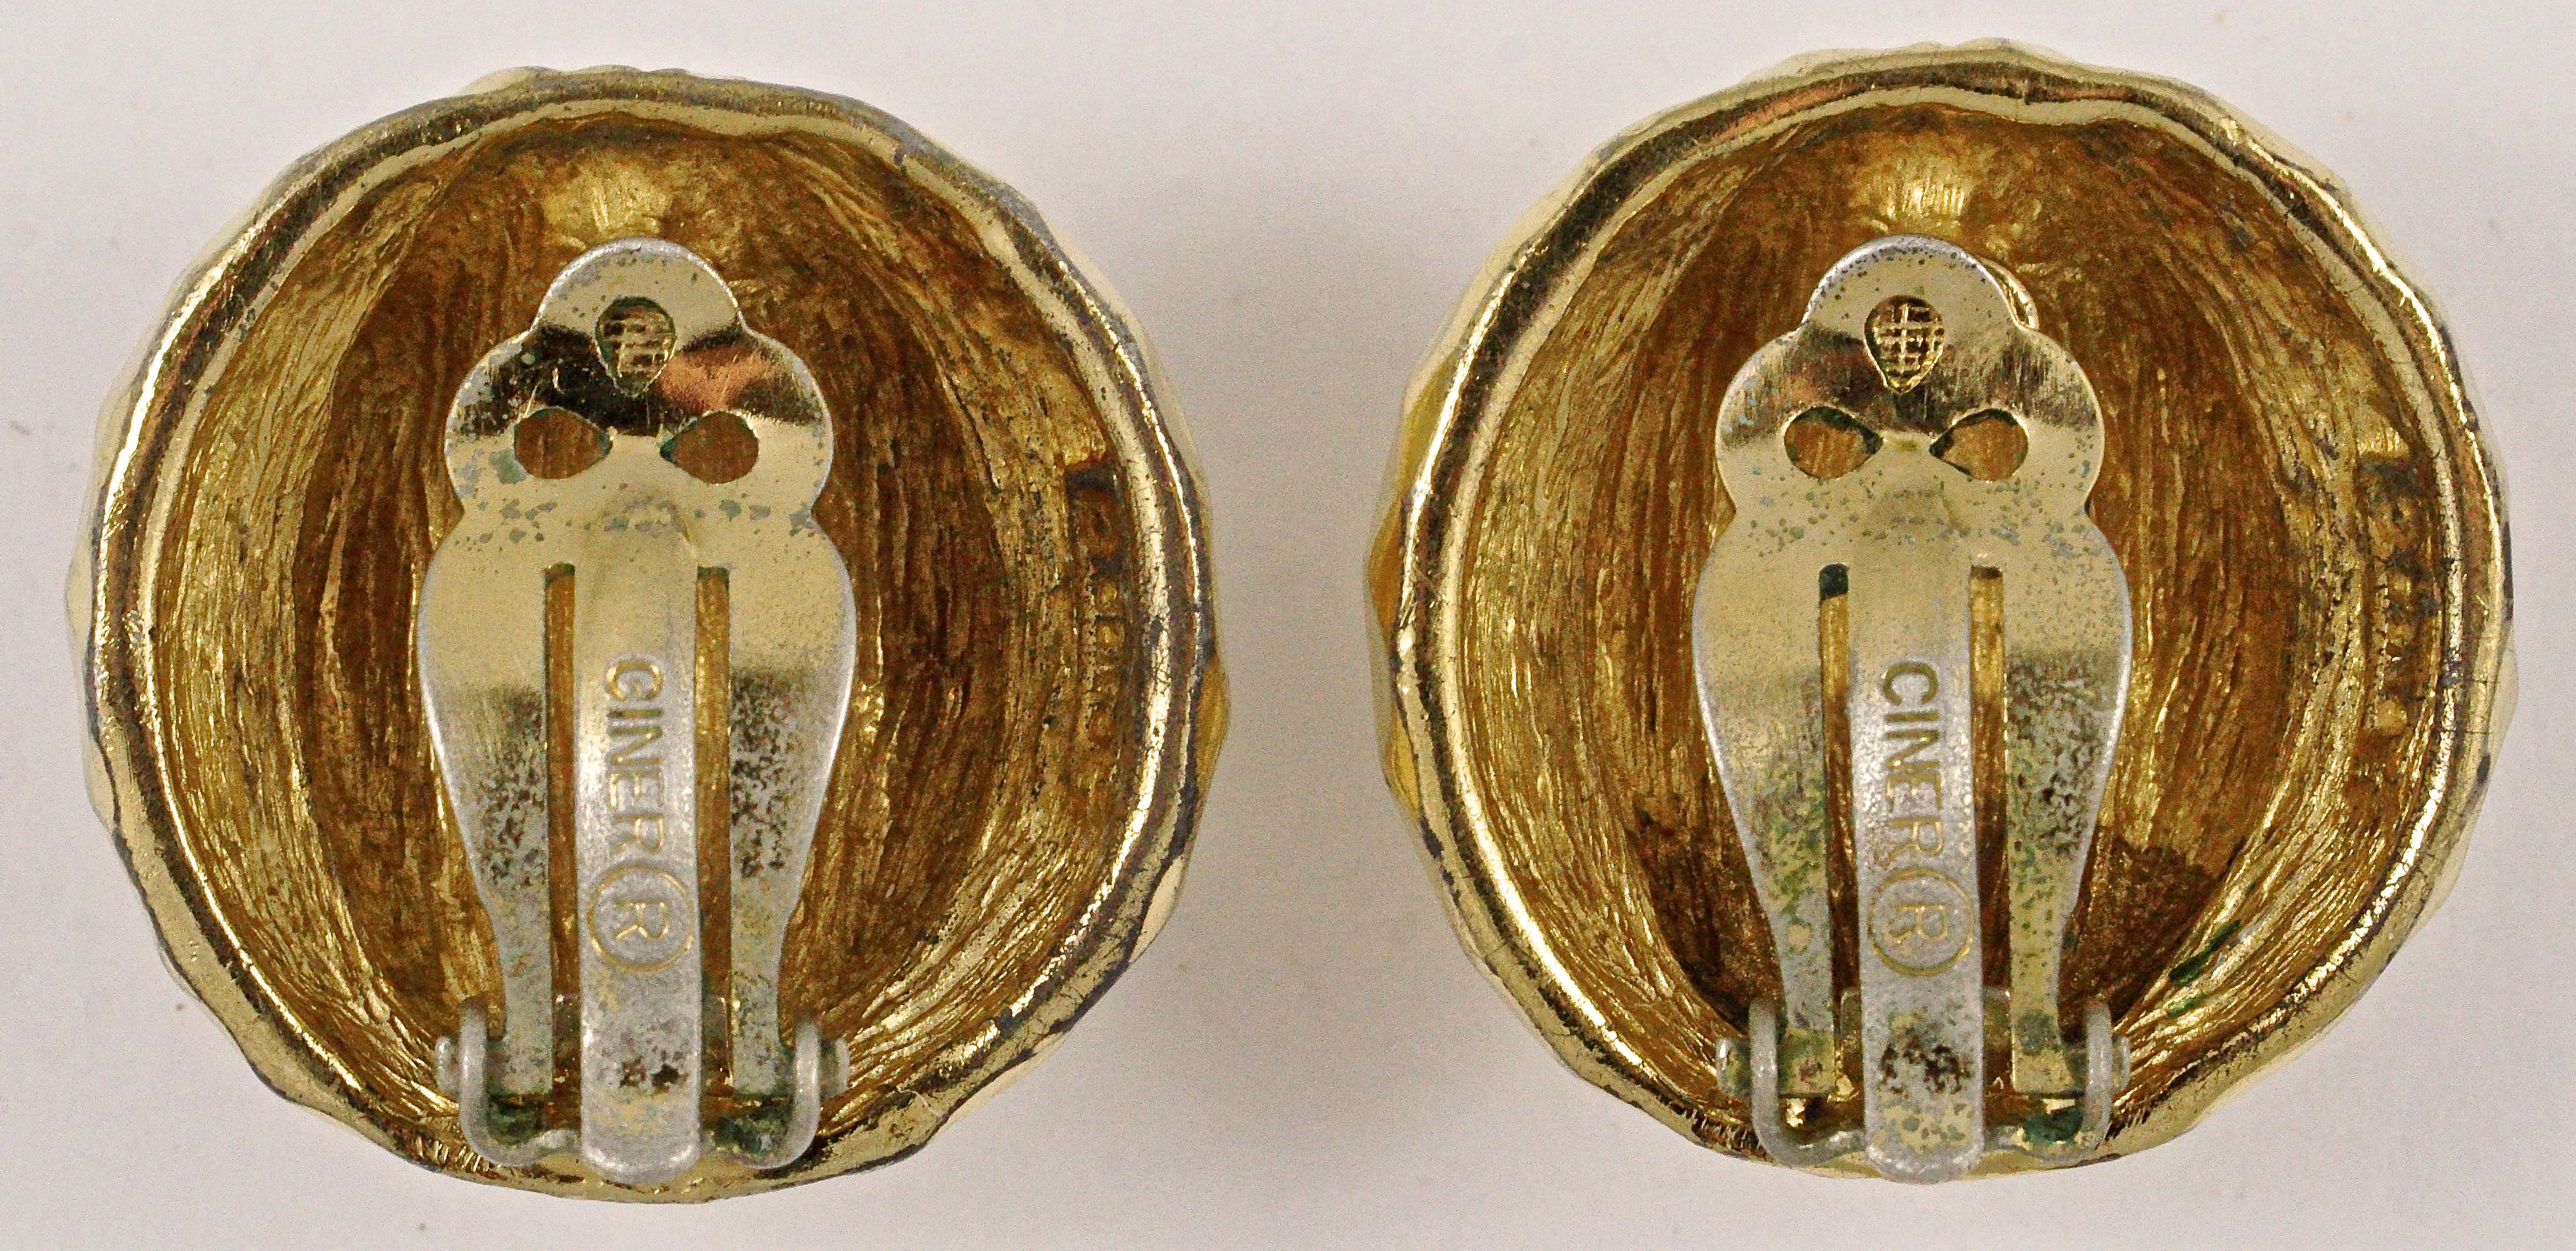 Boucles d'oreilles luxueuses en plaqué or de Ciner, avec un design strié et à motifs. Diamètre de mesure 2,4 cm / 0,95 pouce. L'avant des boucles d'oreilles est en très bon état, il y a une usure du placage d'or sur les clips et l'arrière des